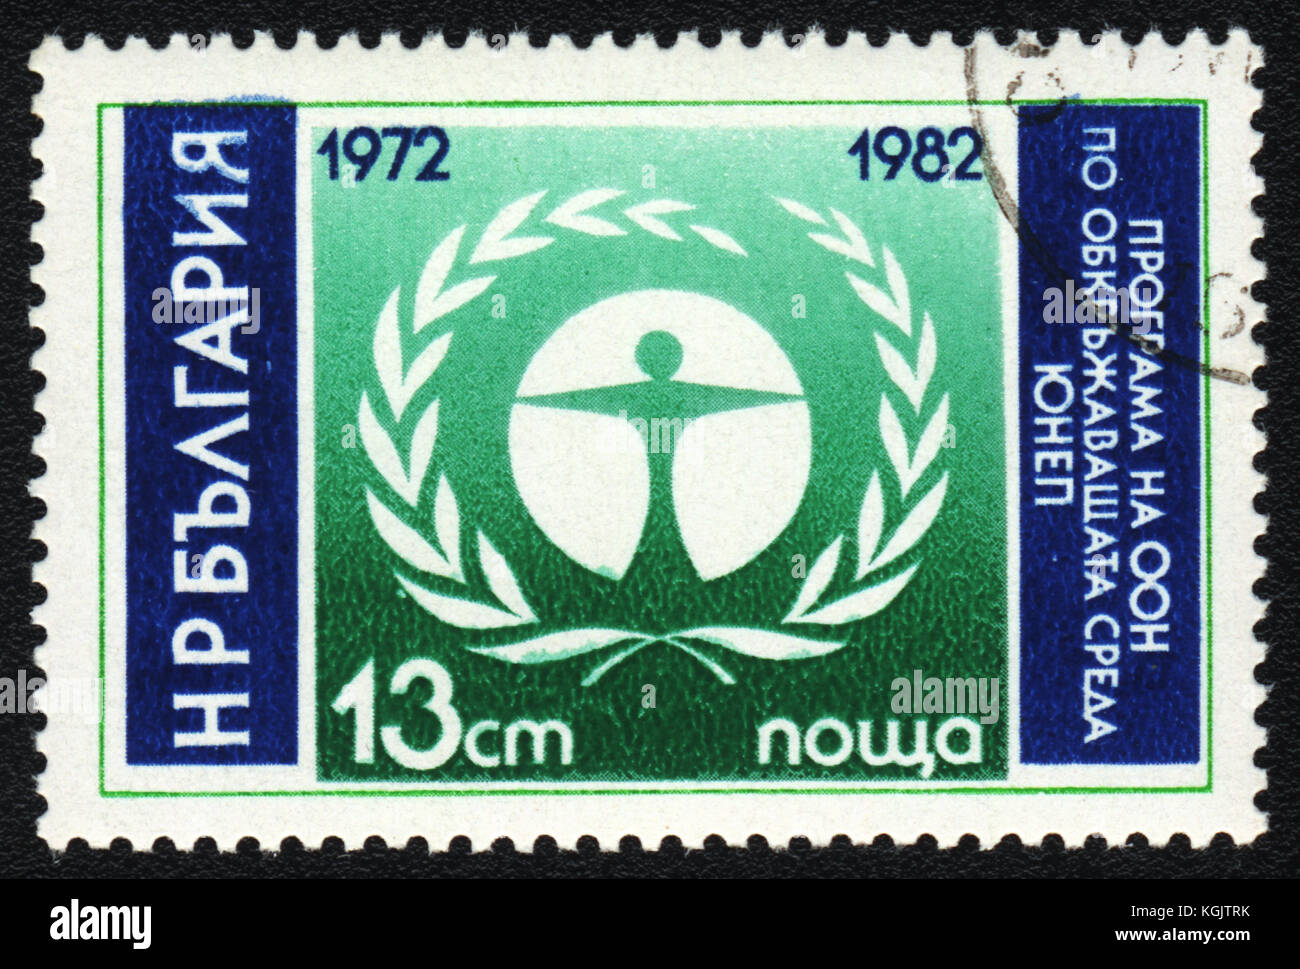 Un timbre-poste imprimé en Bulgarie affiche Programme des Nations unies pour l'environnement, vers 1982 Banque D'Images